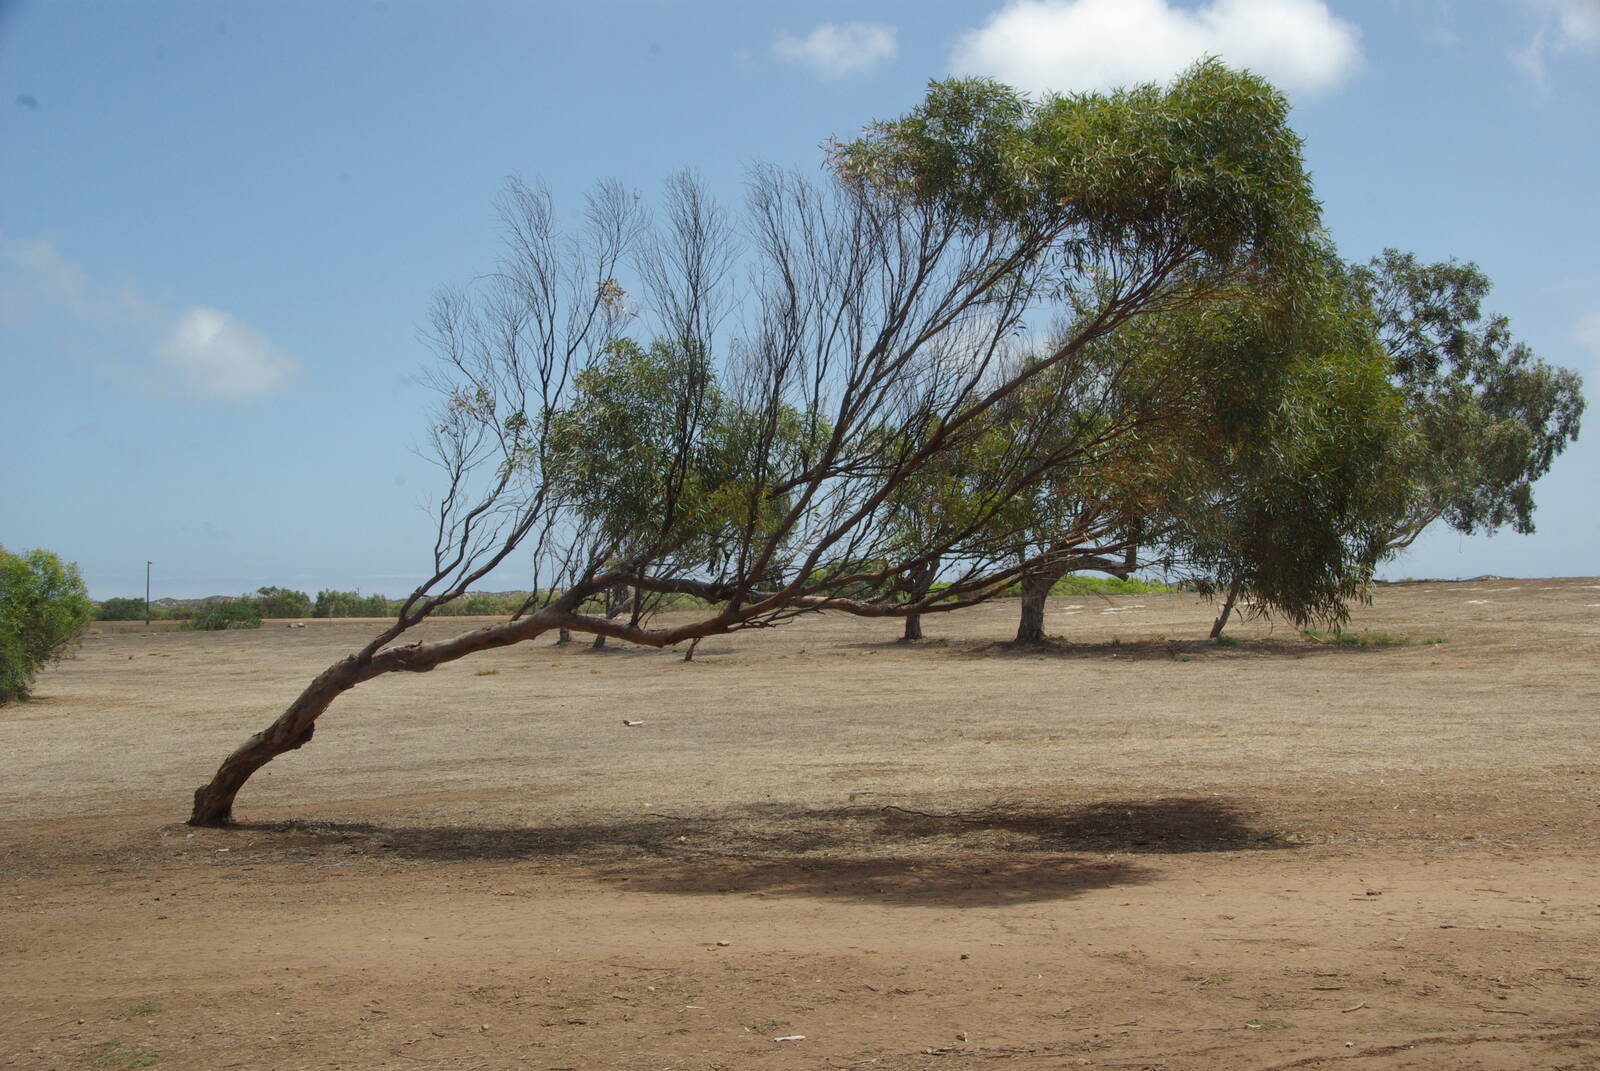 Image of Greenough, Western Australia by Nigel Shaw